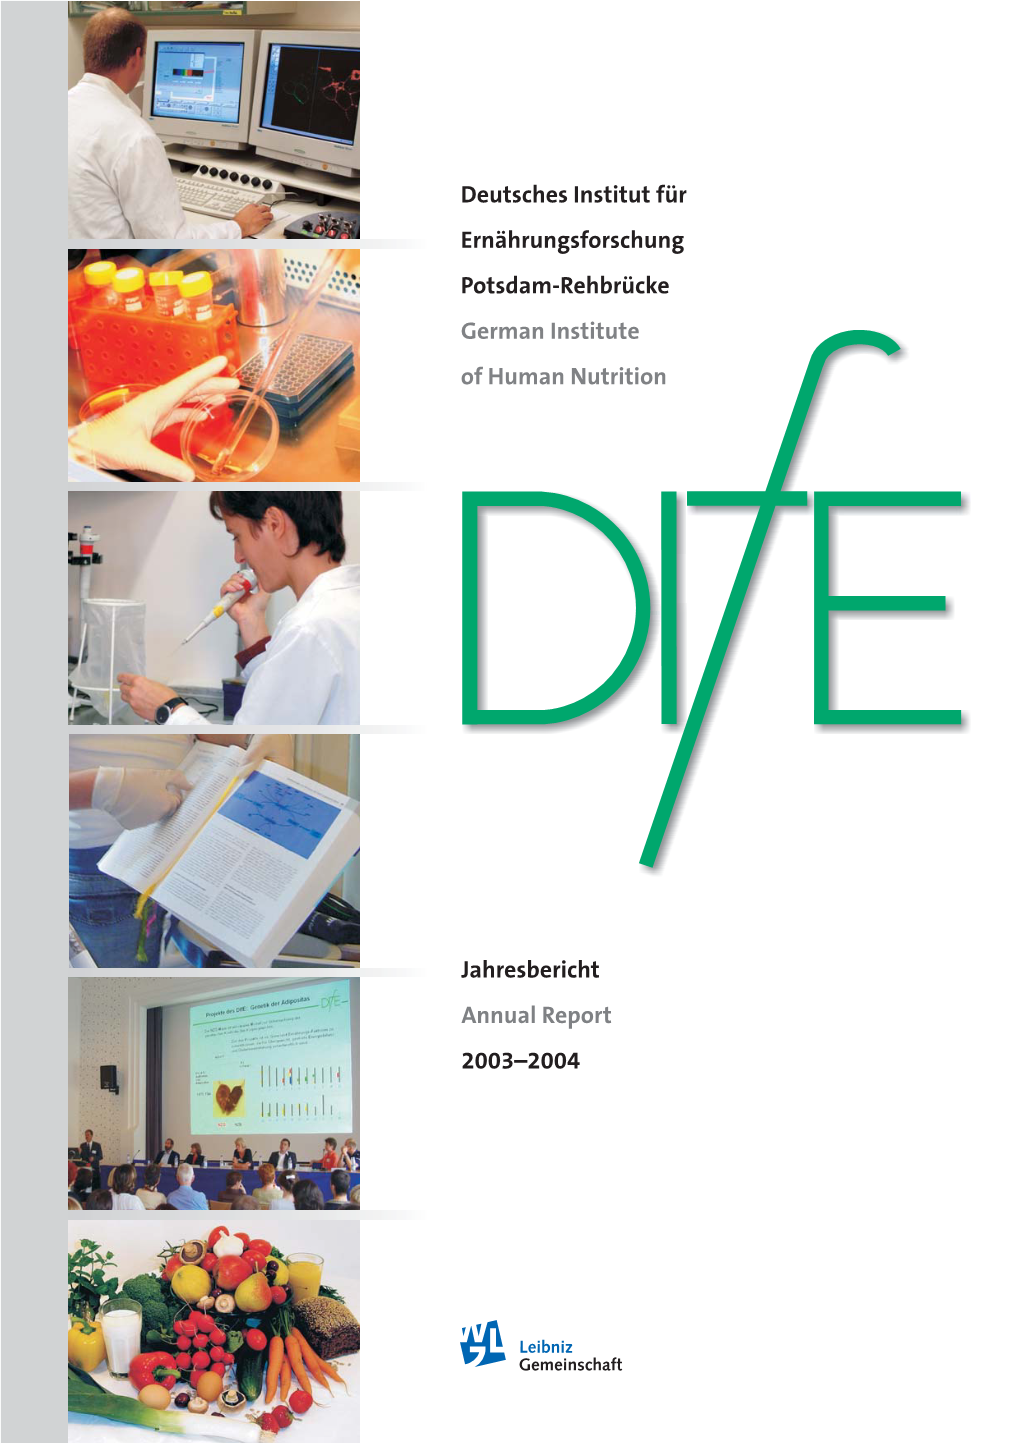 Deutsches Institut Für Ernährungsforschung Potsdam-Rehbrücke German Institute of Human Nutrition